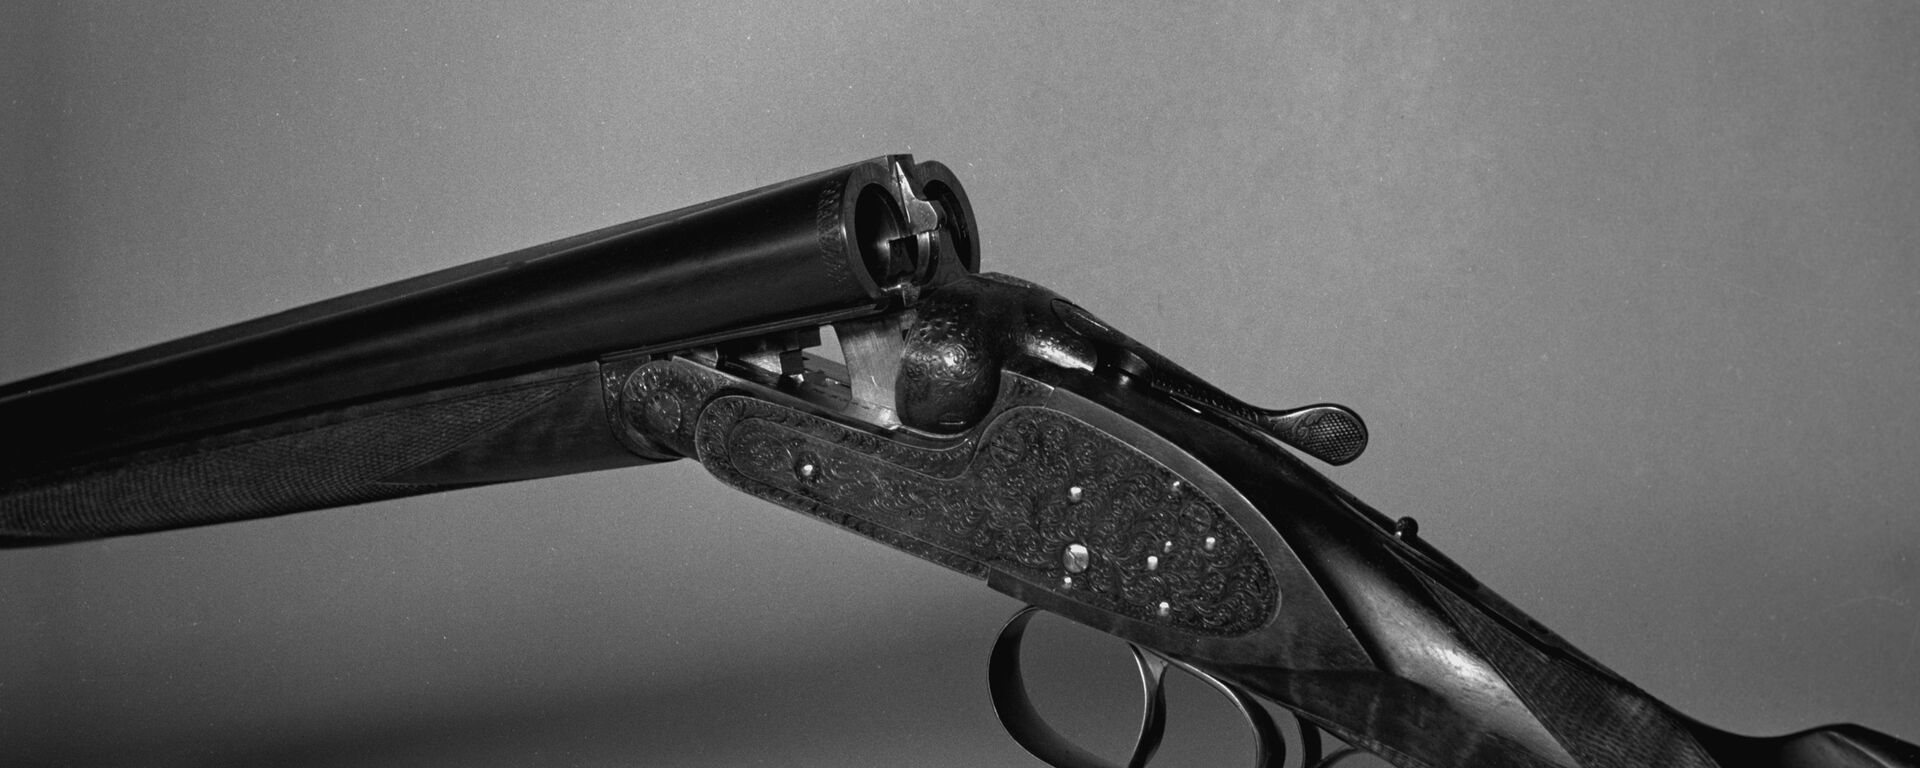 Охотничье двуствольное ружье с вертикально спаренными стволами МЦ-6 - Sputnik Латвия, 1920, 06.12.2020